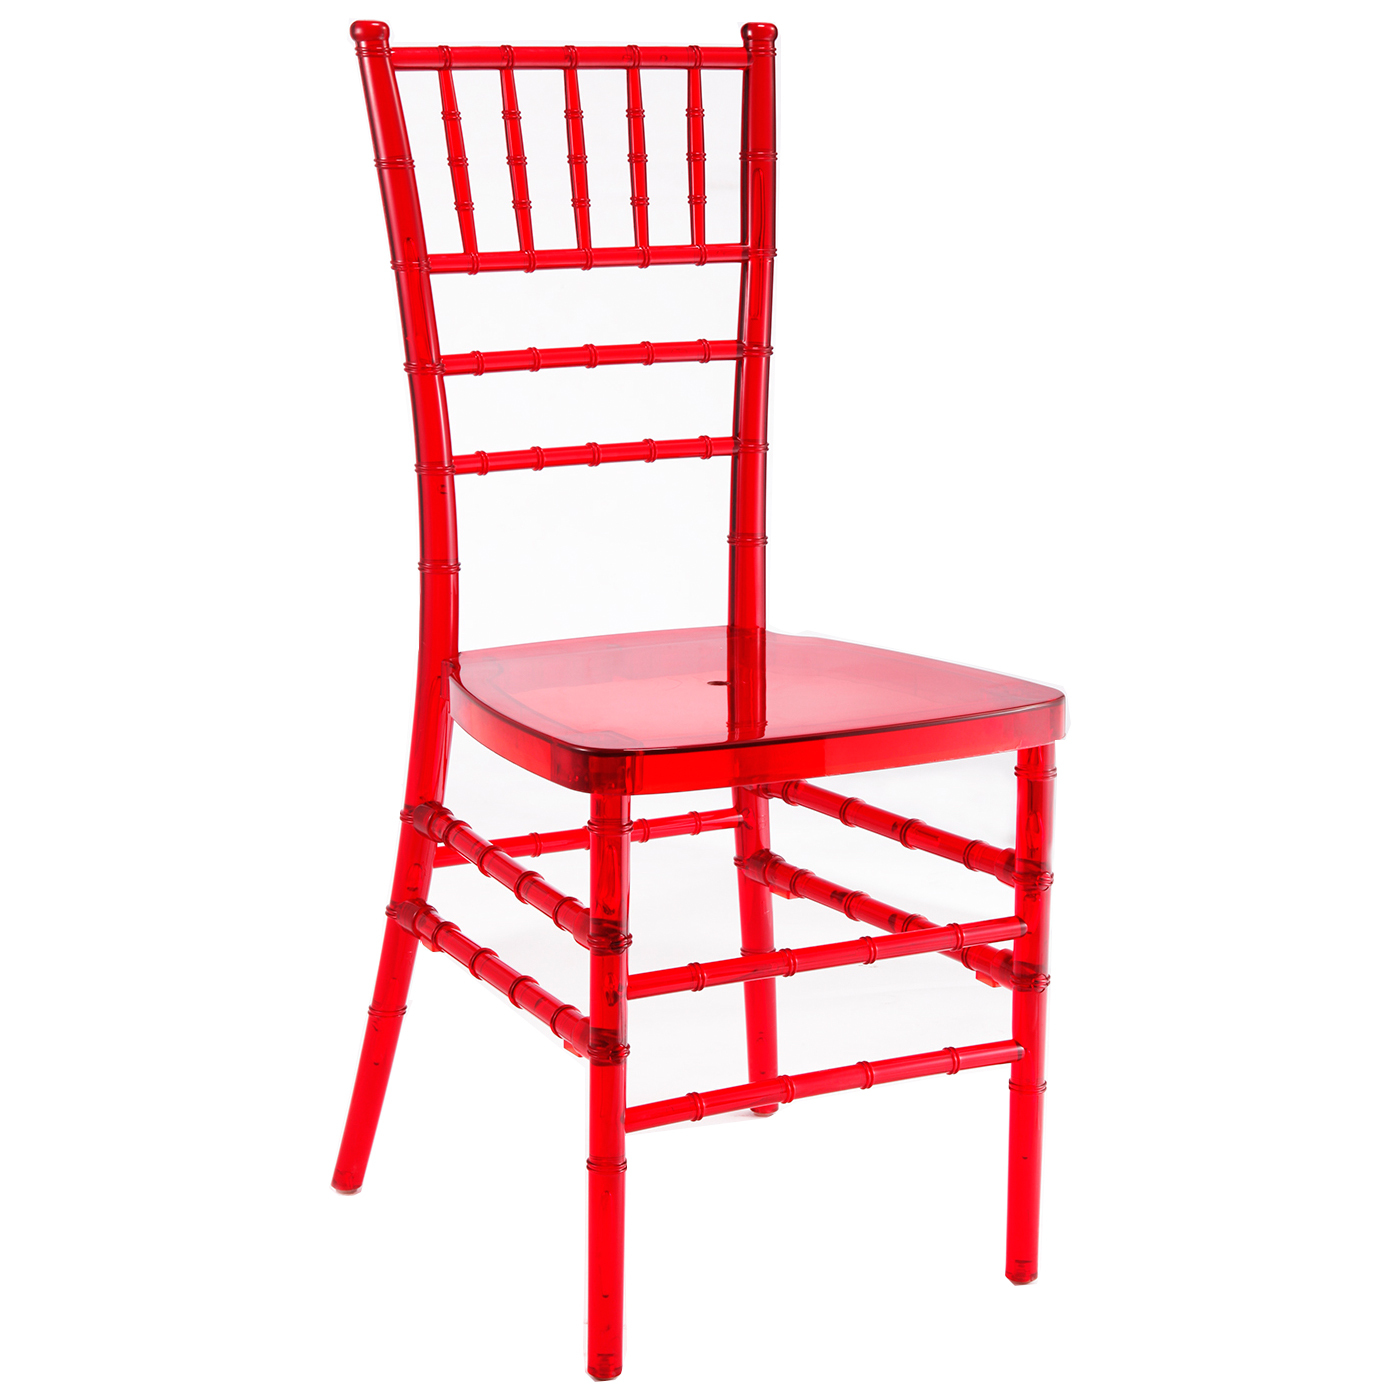 Красный деревянный стул